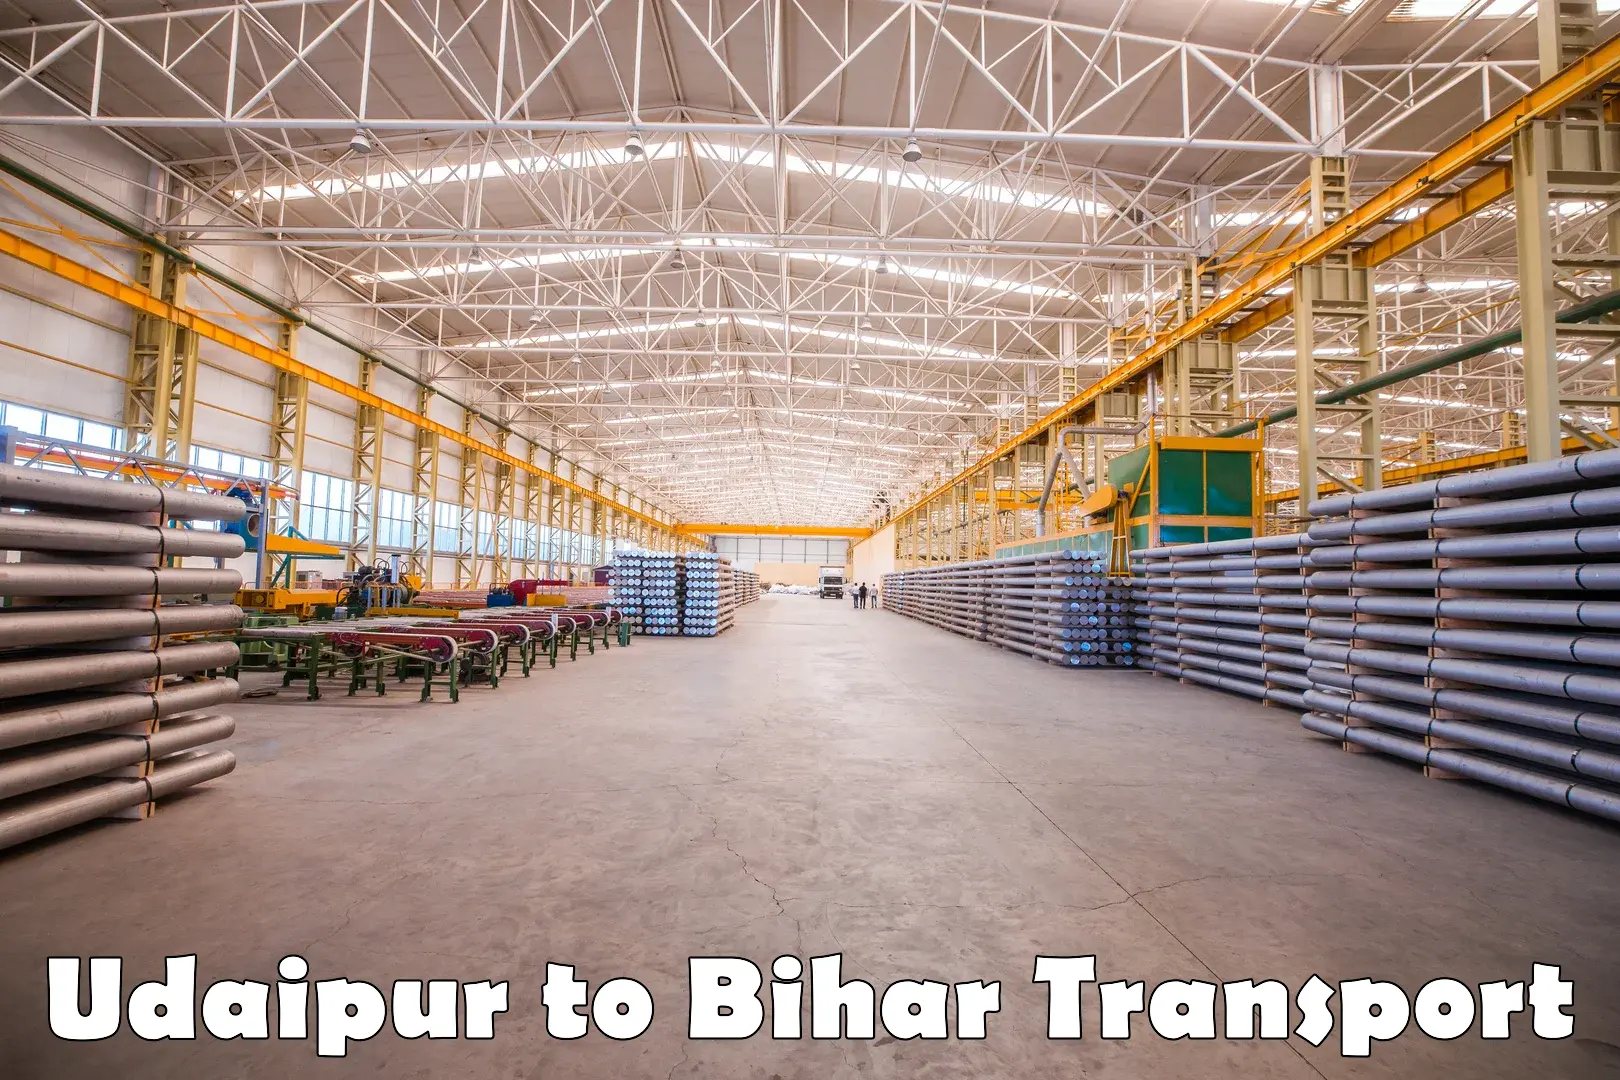 Vehicle transport services Udaipur to Jagdishpur Bhojpur